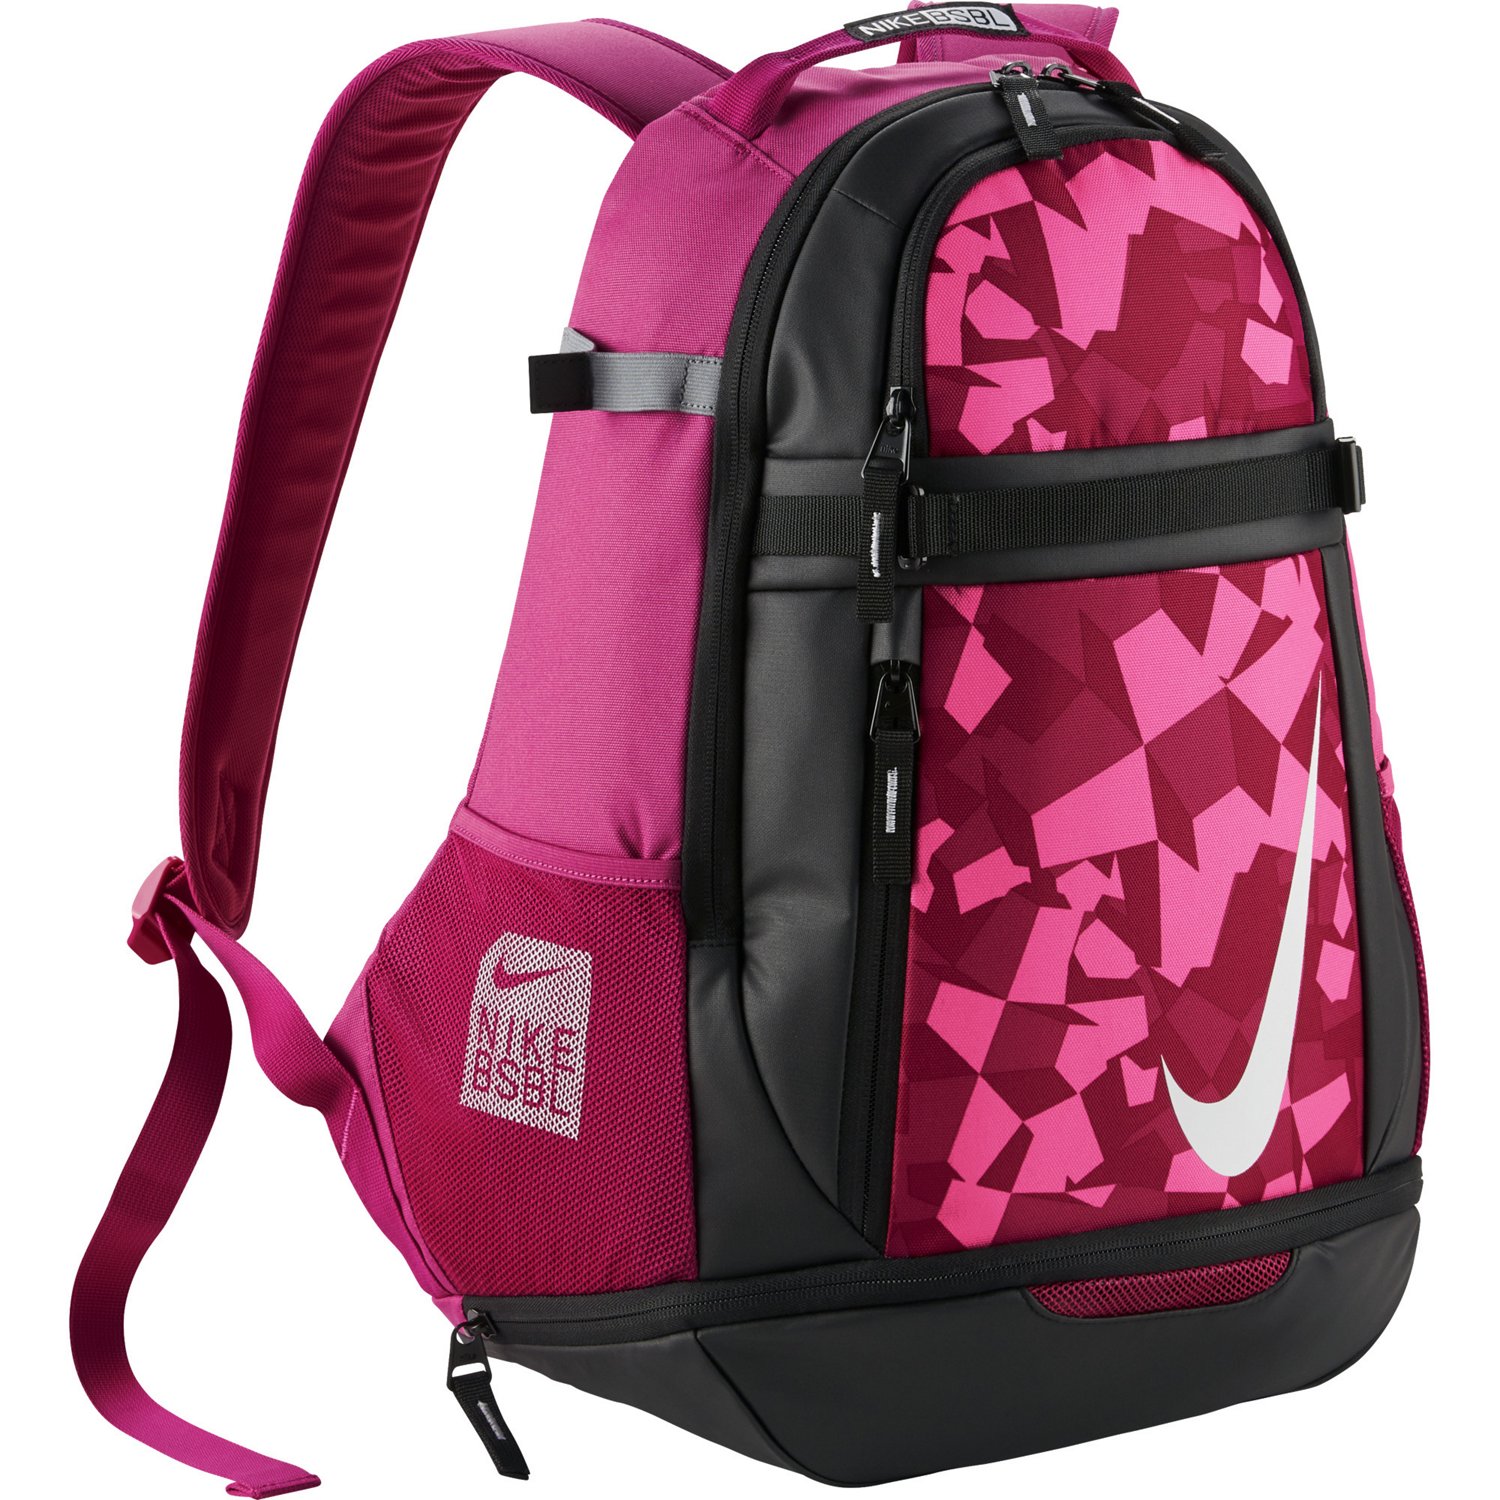 Backpacks, School Bags & Book Bags | Academy